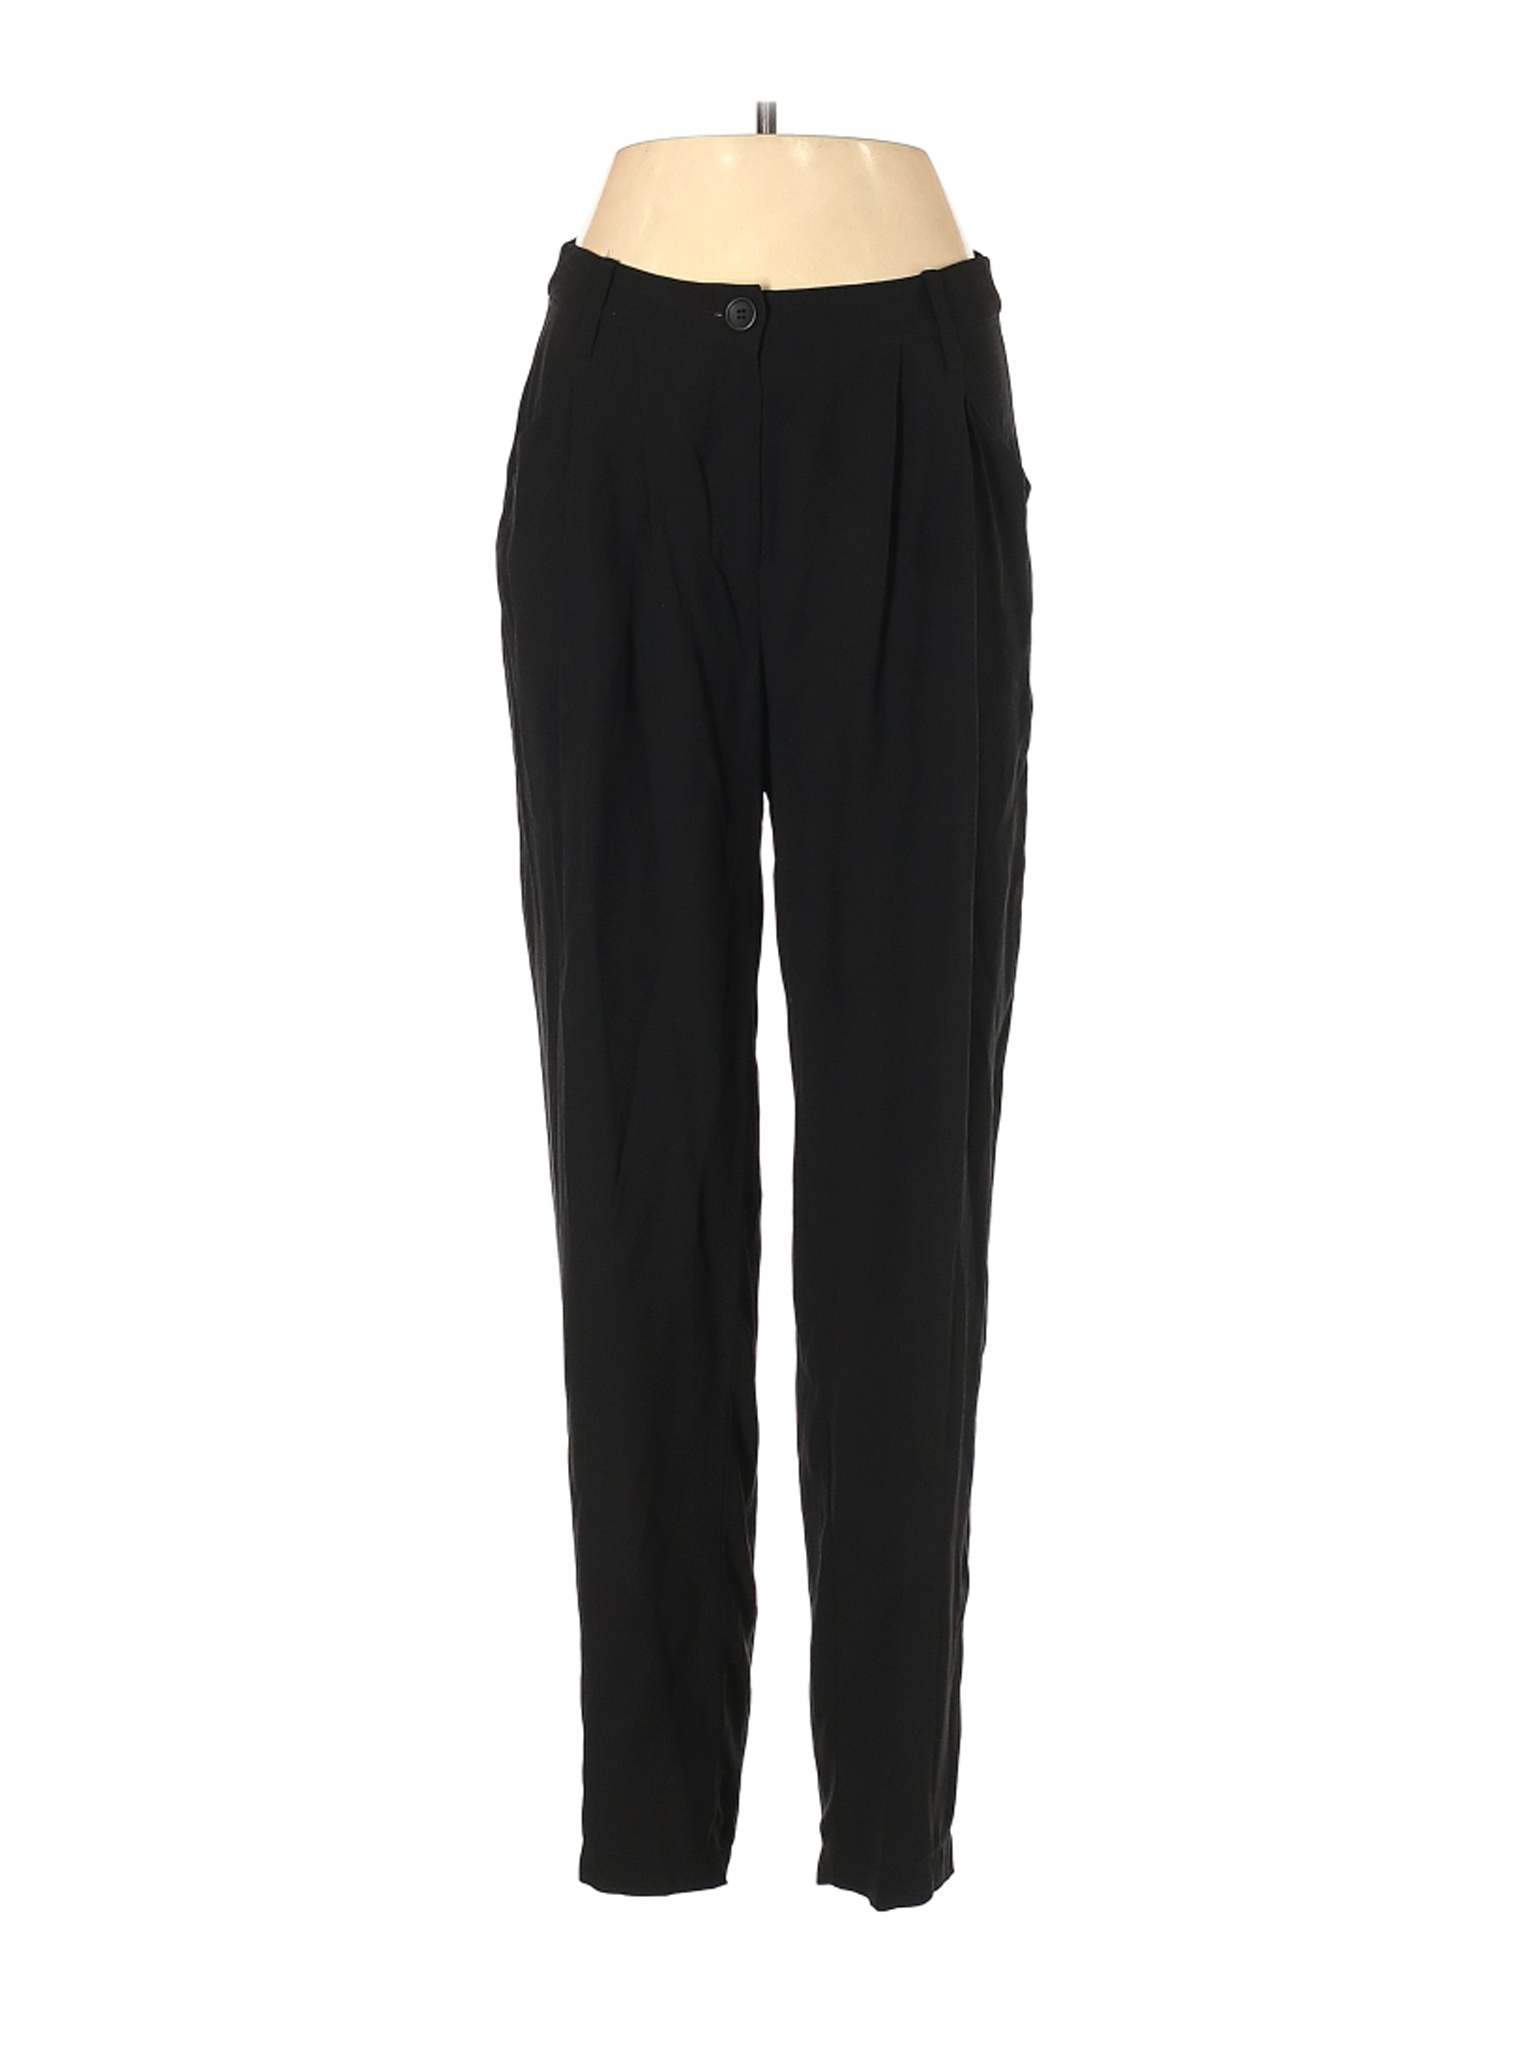 Eileen Fisher Women Black Silk Pants S | eBay